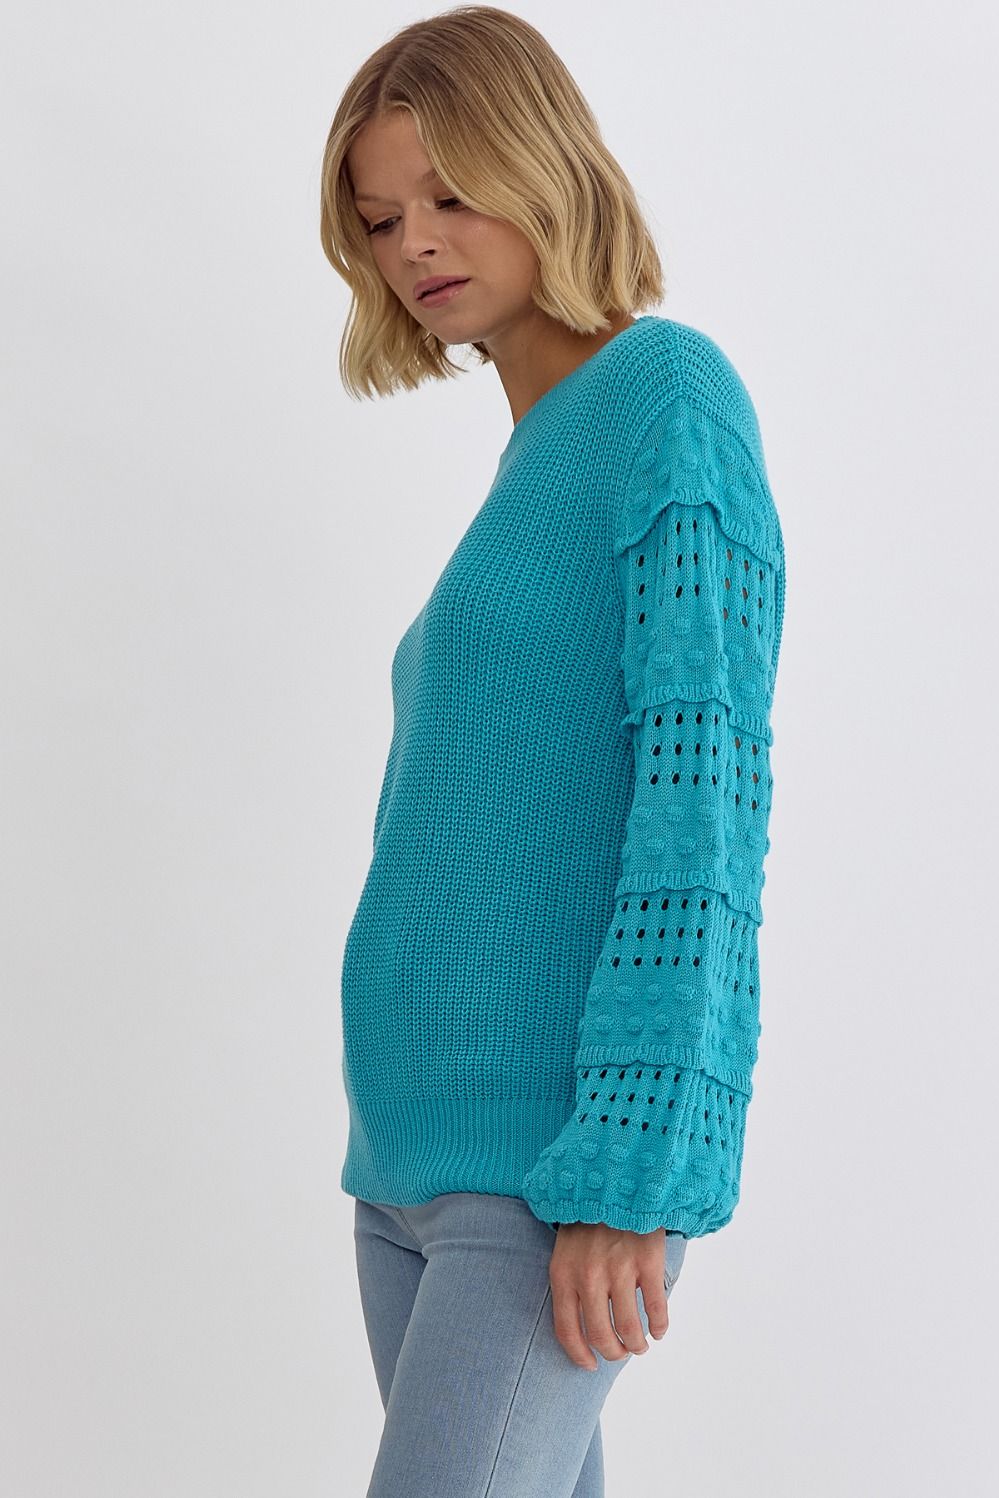 Farah Sweater (Aqua)